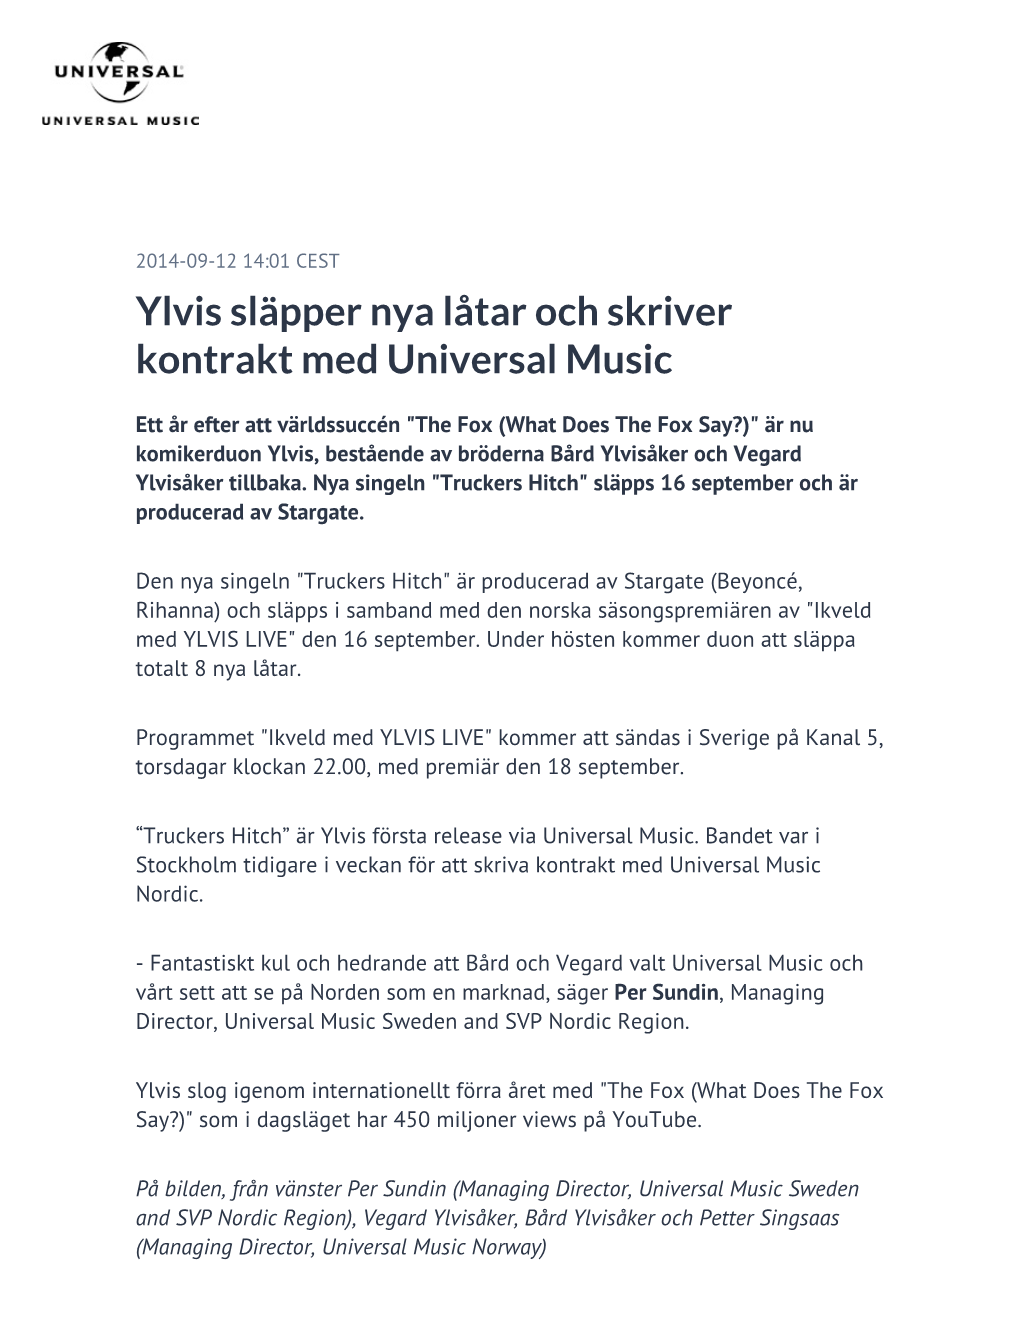 Ylvis Släpper Nya Låtar Och Skriver Kontrakt Med Universal Music